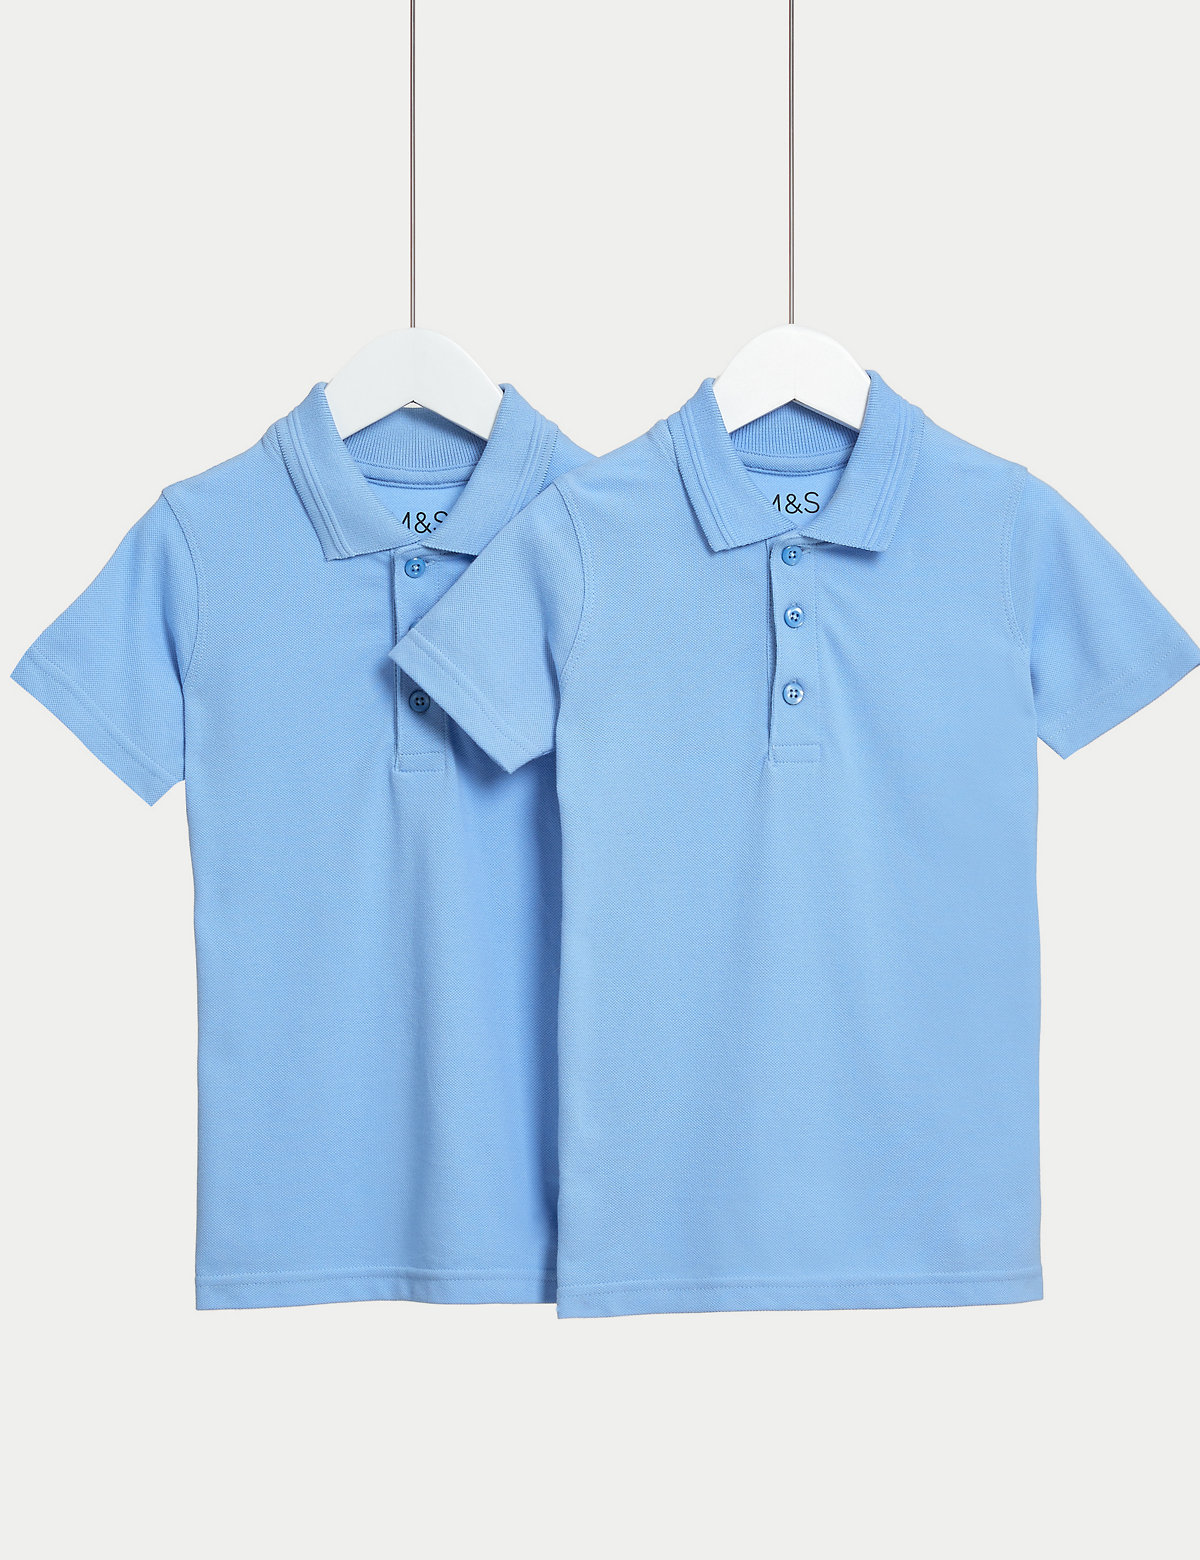 2Pk Boys' Slim Fit Polo Shirts